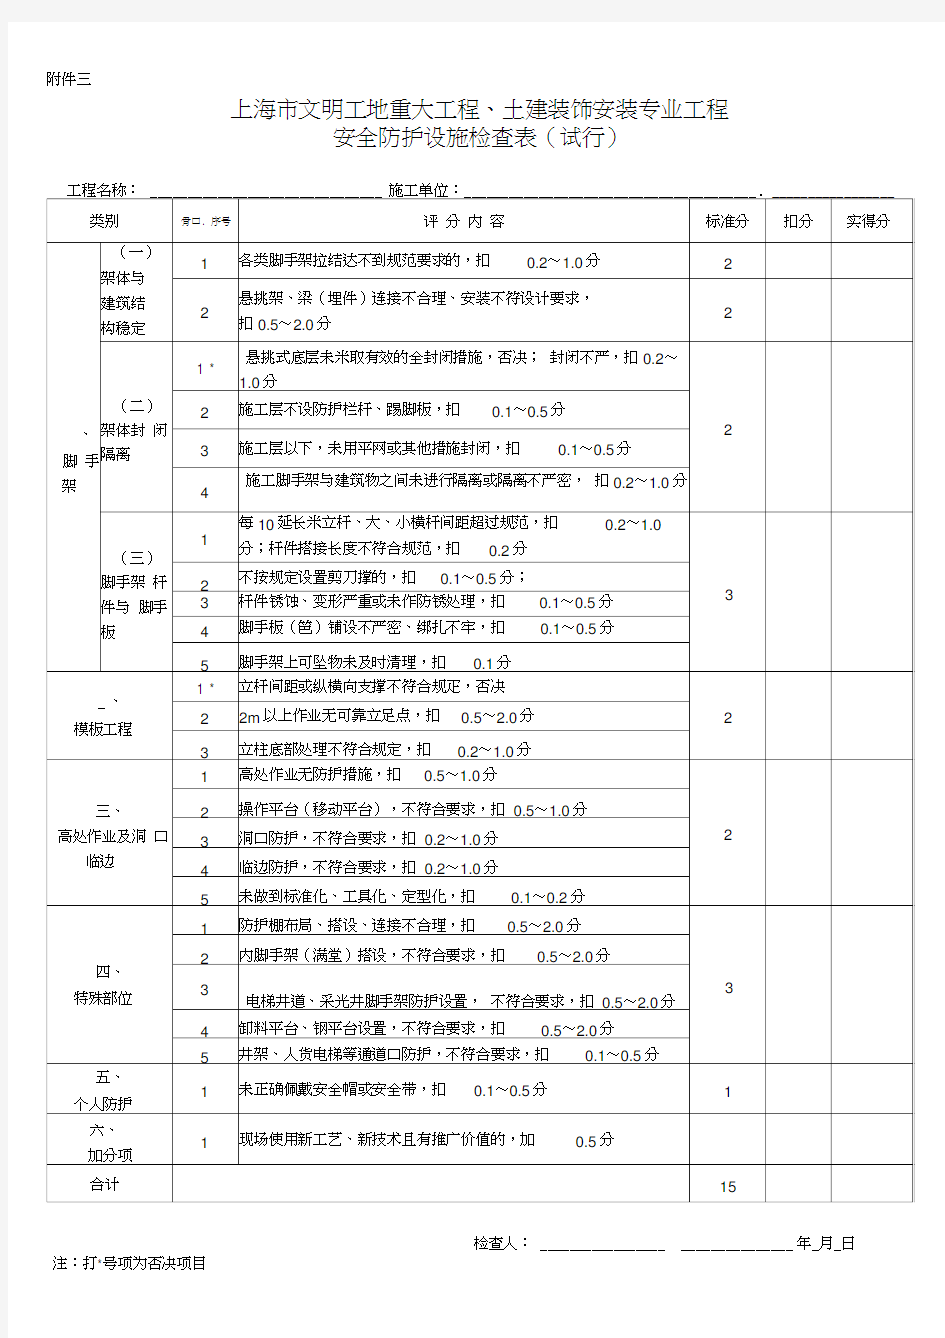 上海市文明工地检查评分表(新版)